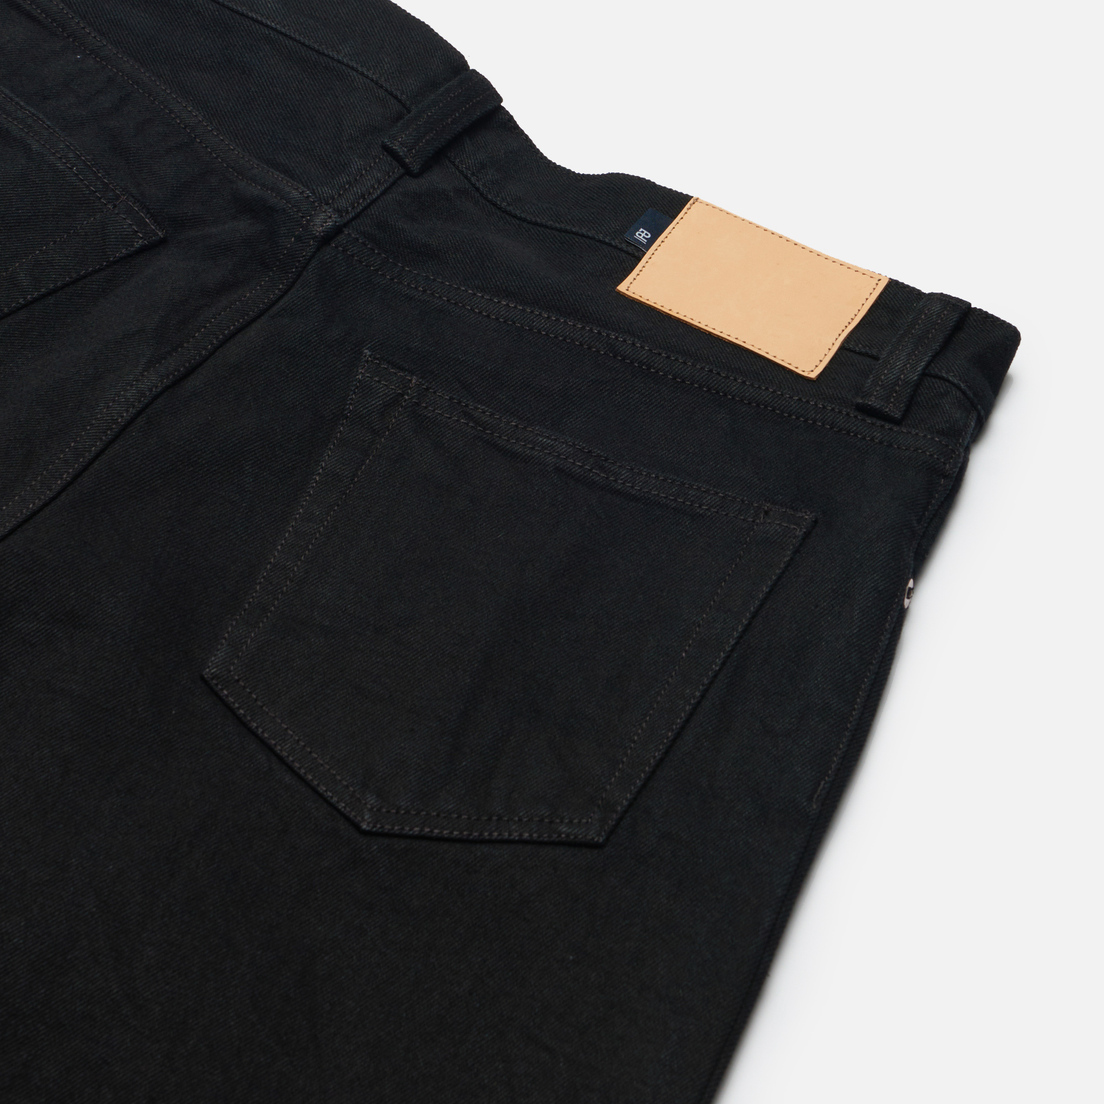 EASTLOGUE Мужские джинсы Permanent 247 5P Standard Denim